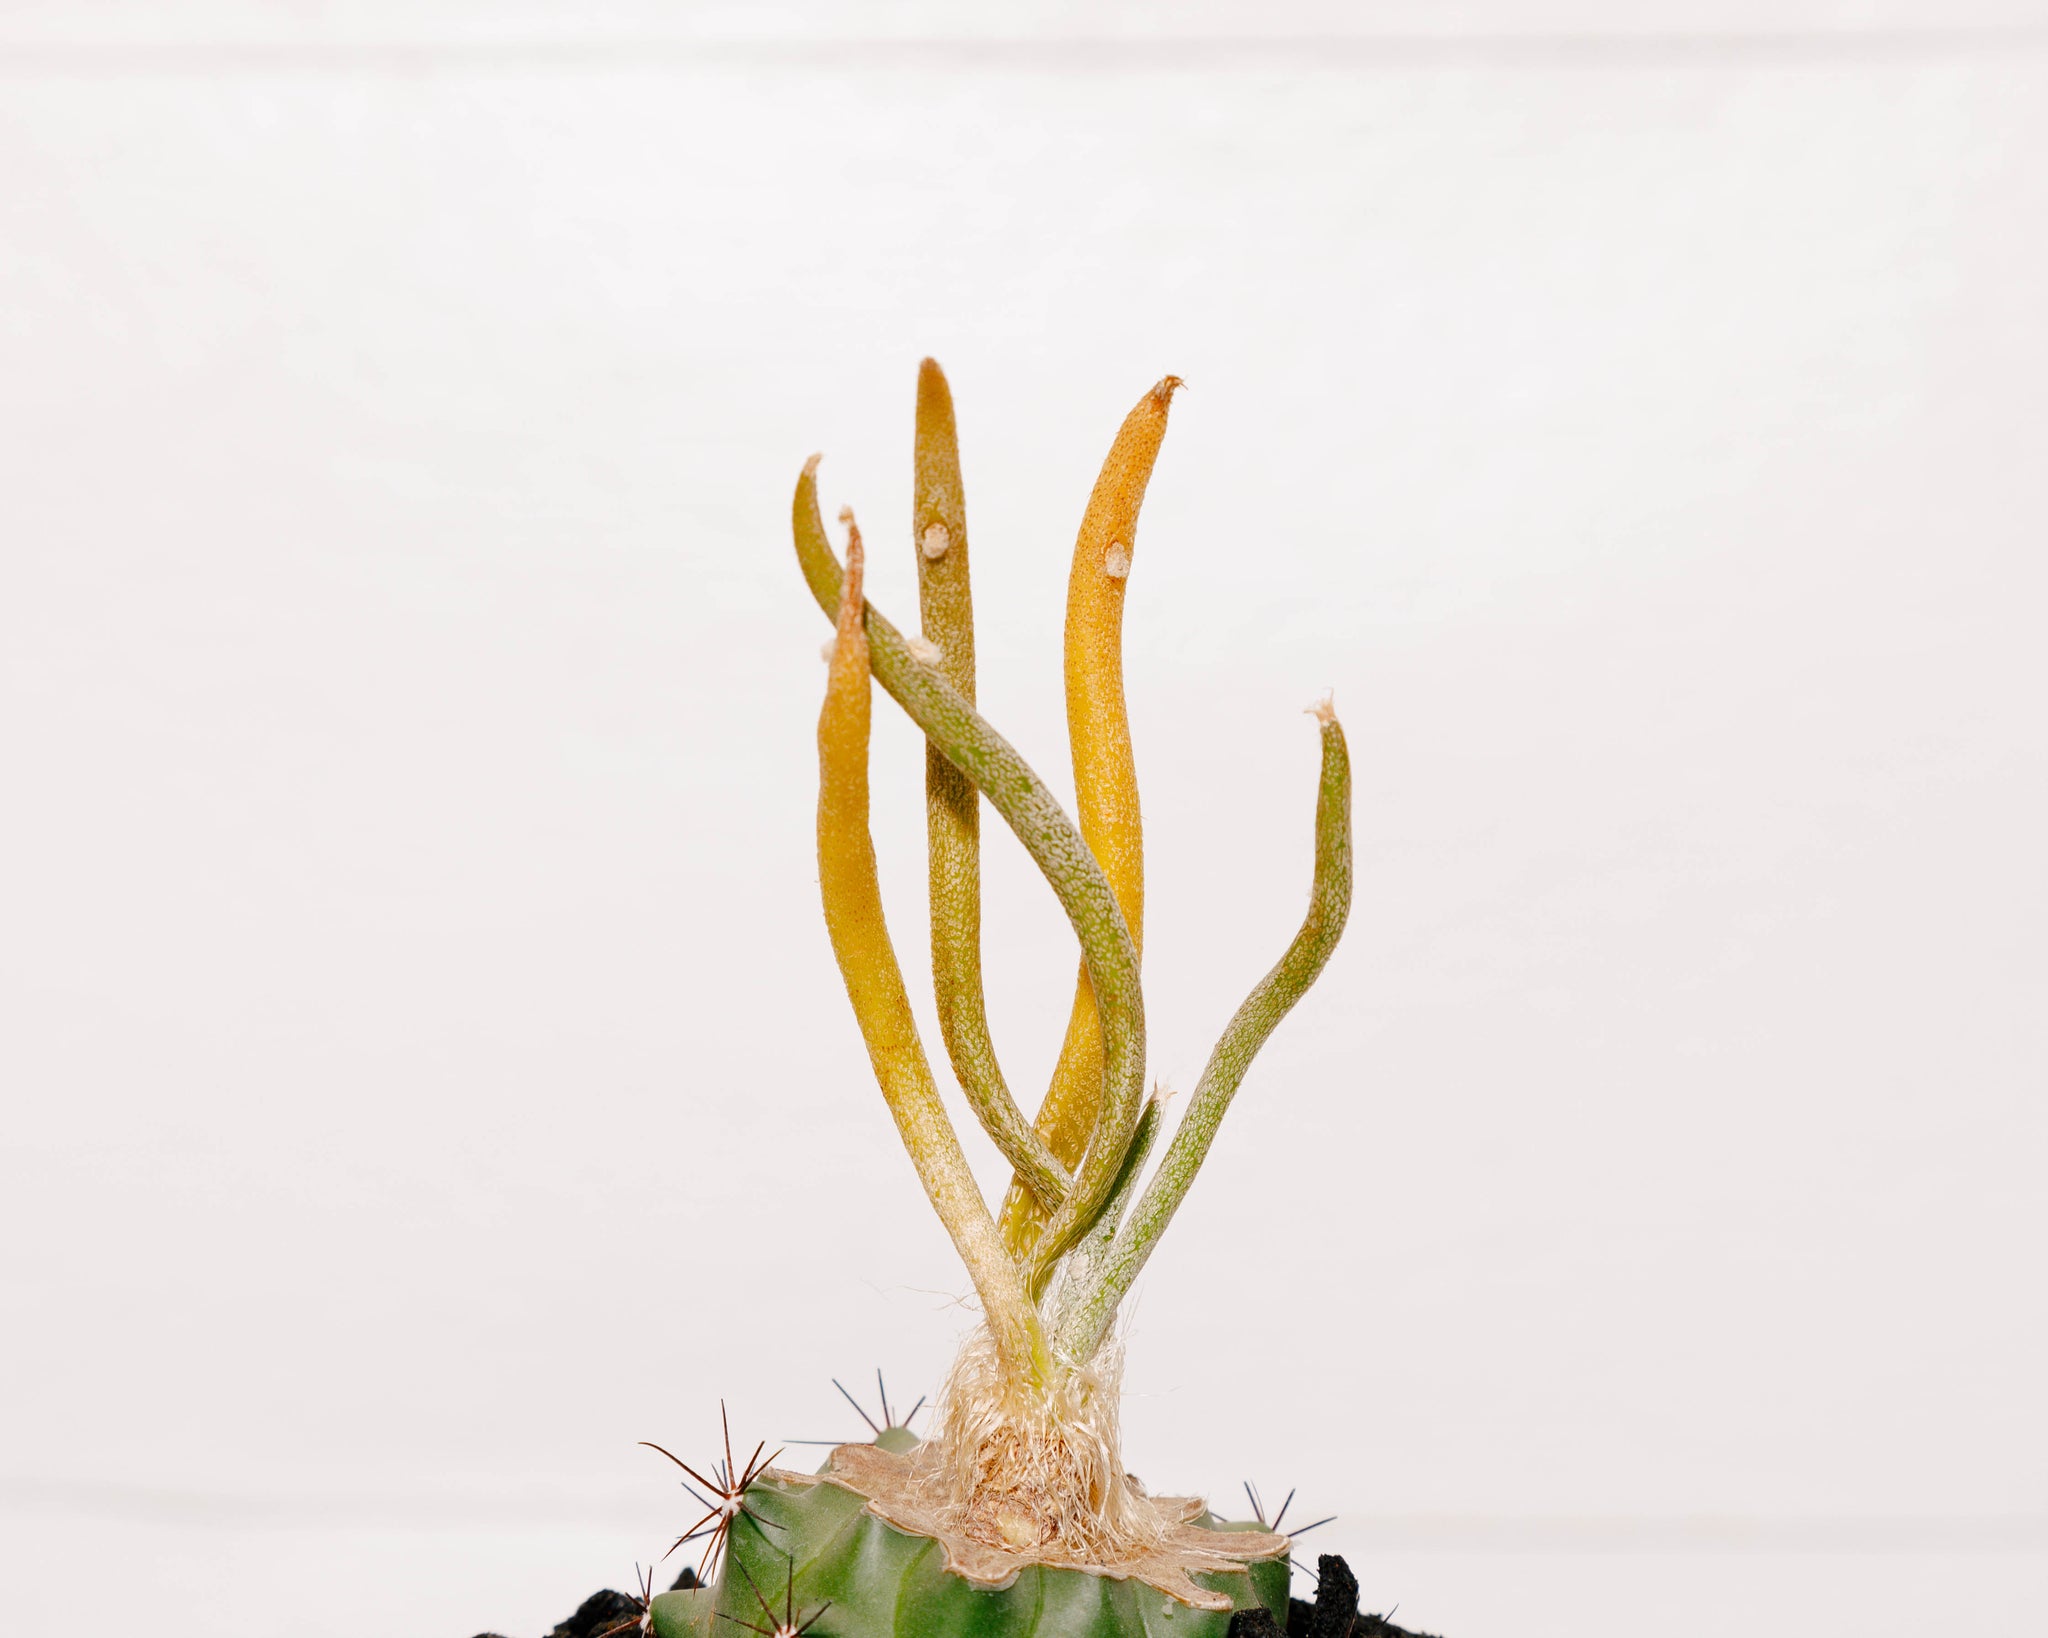 Astrophytum caput-medusae f. variegata